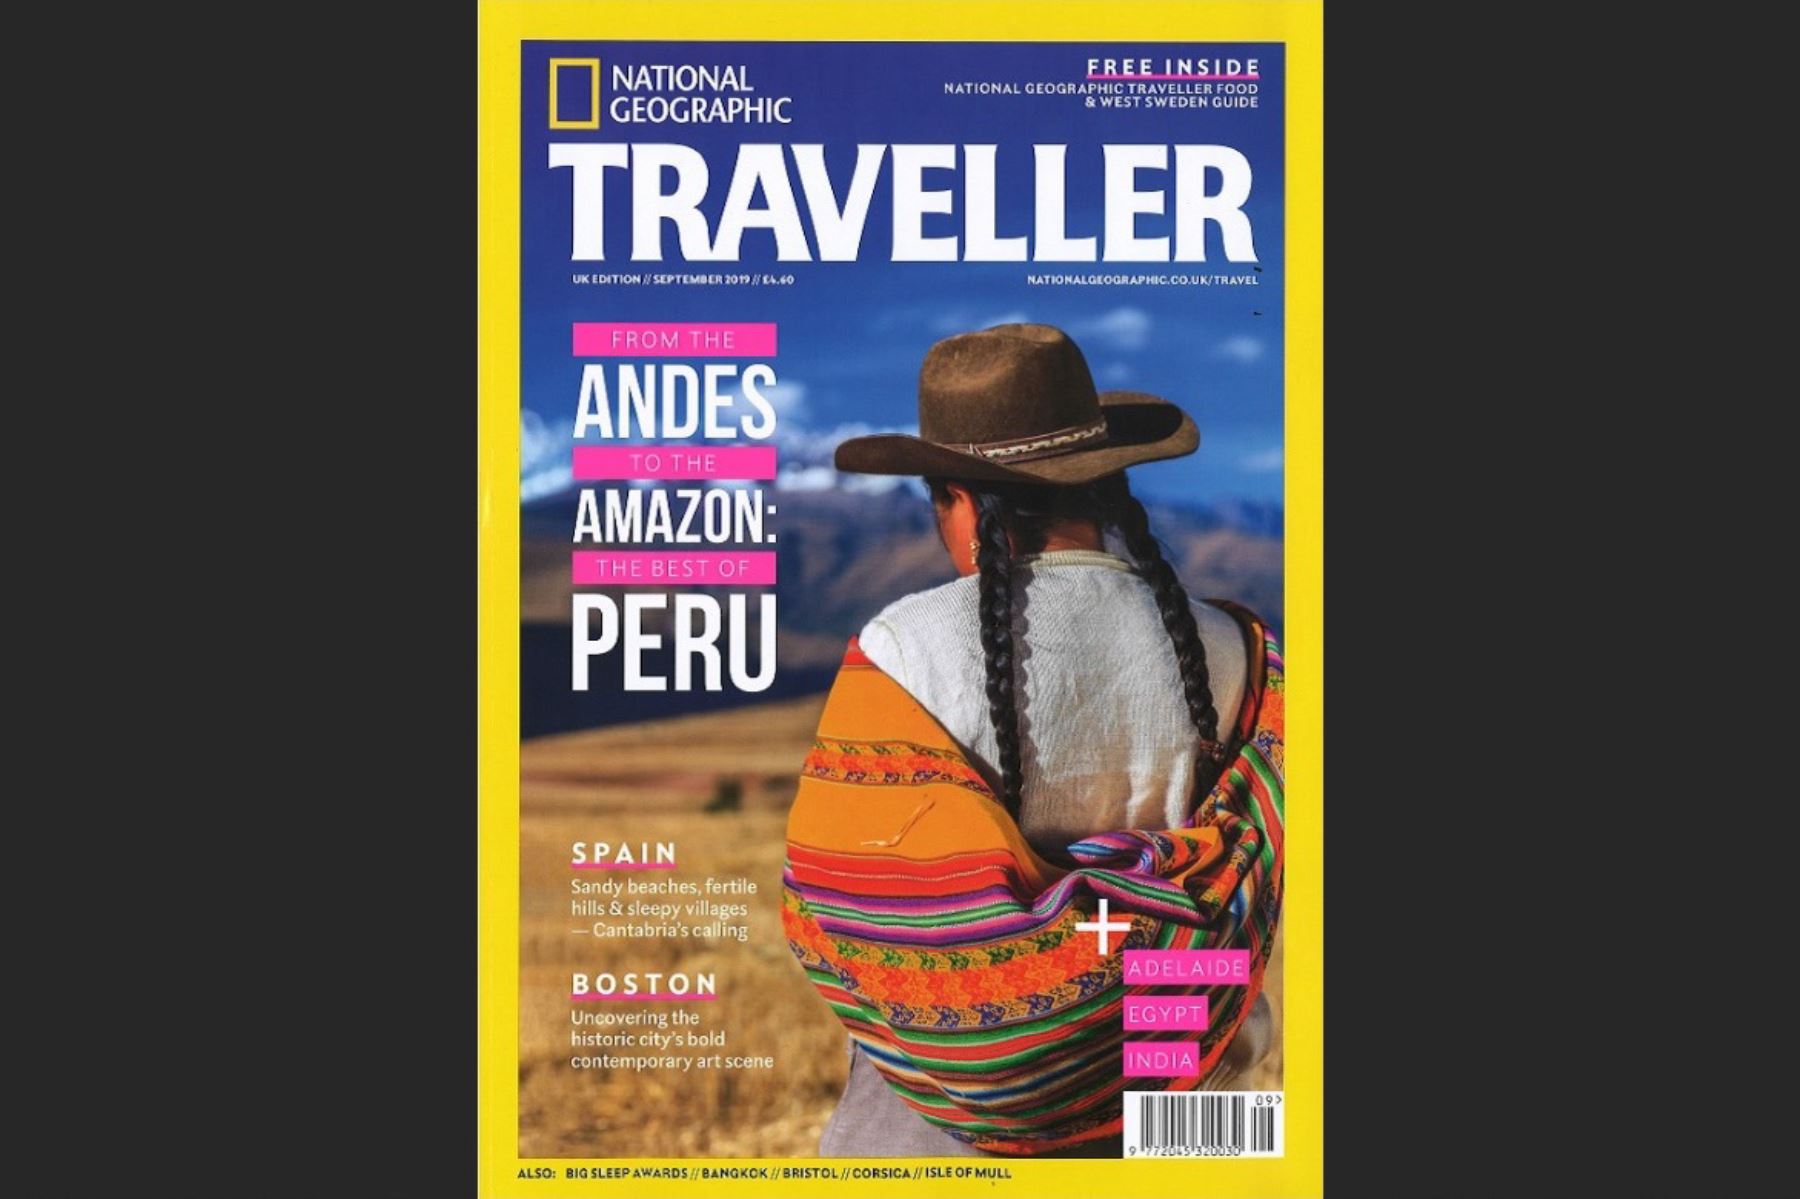 Revista National Geographic Traveller de Reino Unido muestra lo mejor de Perú en edición especial de setiembre.